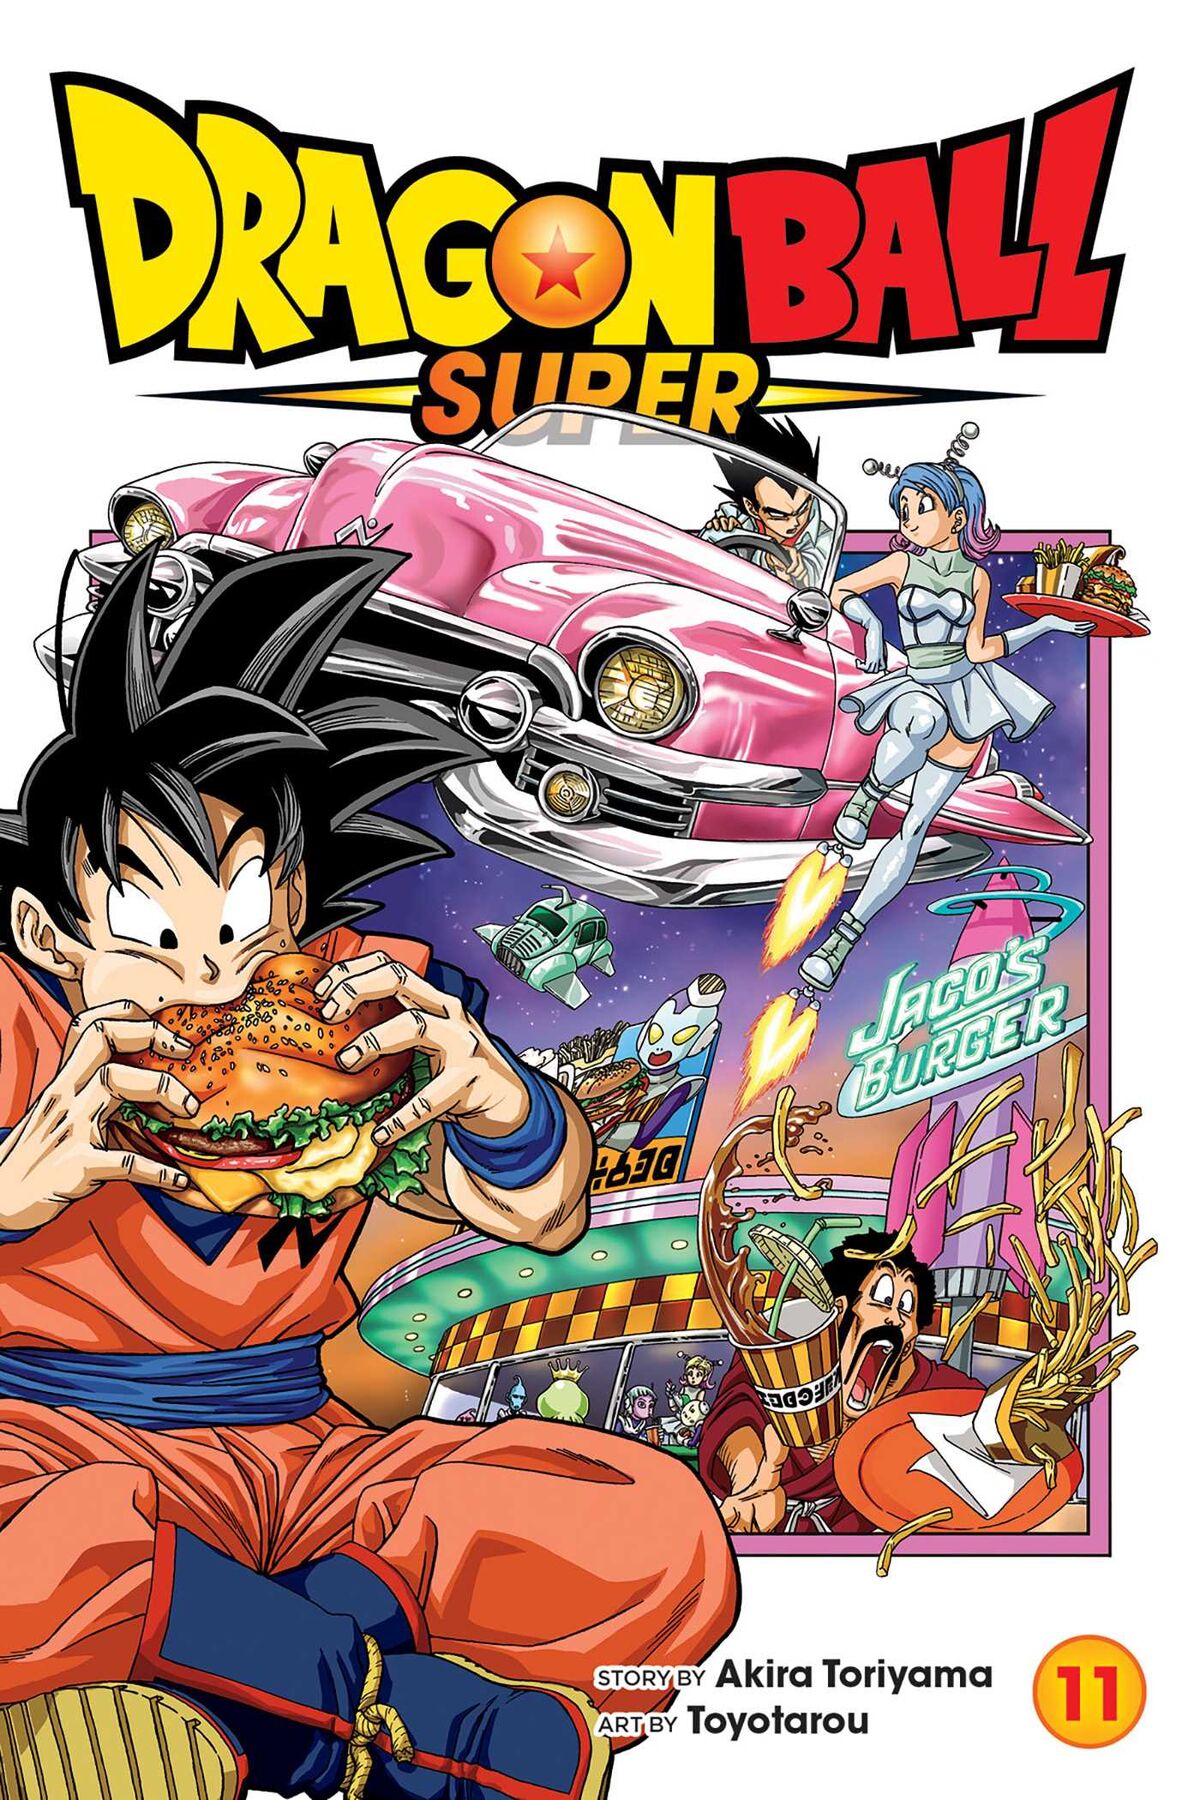 Dragon Ball Super Capítulo 94 – Mangás Chan